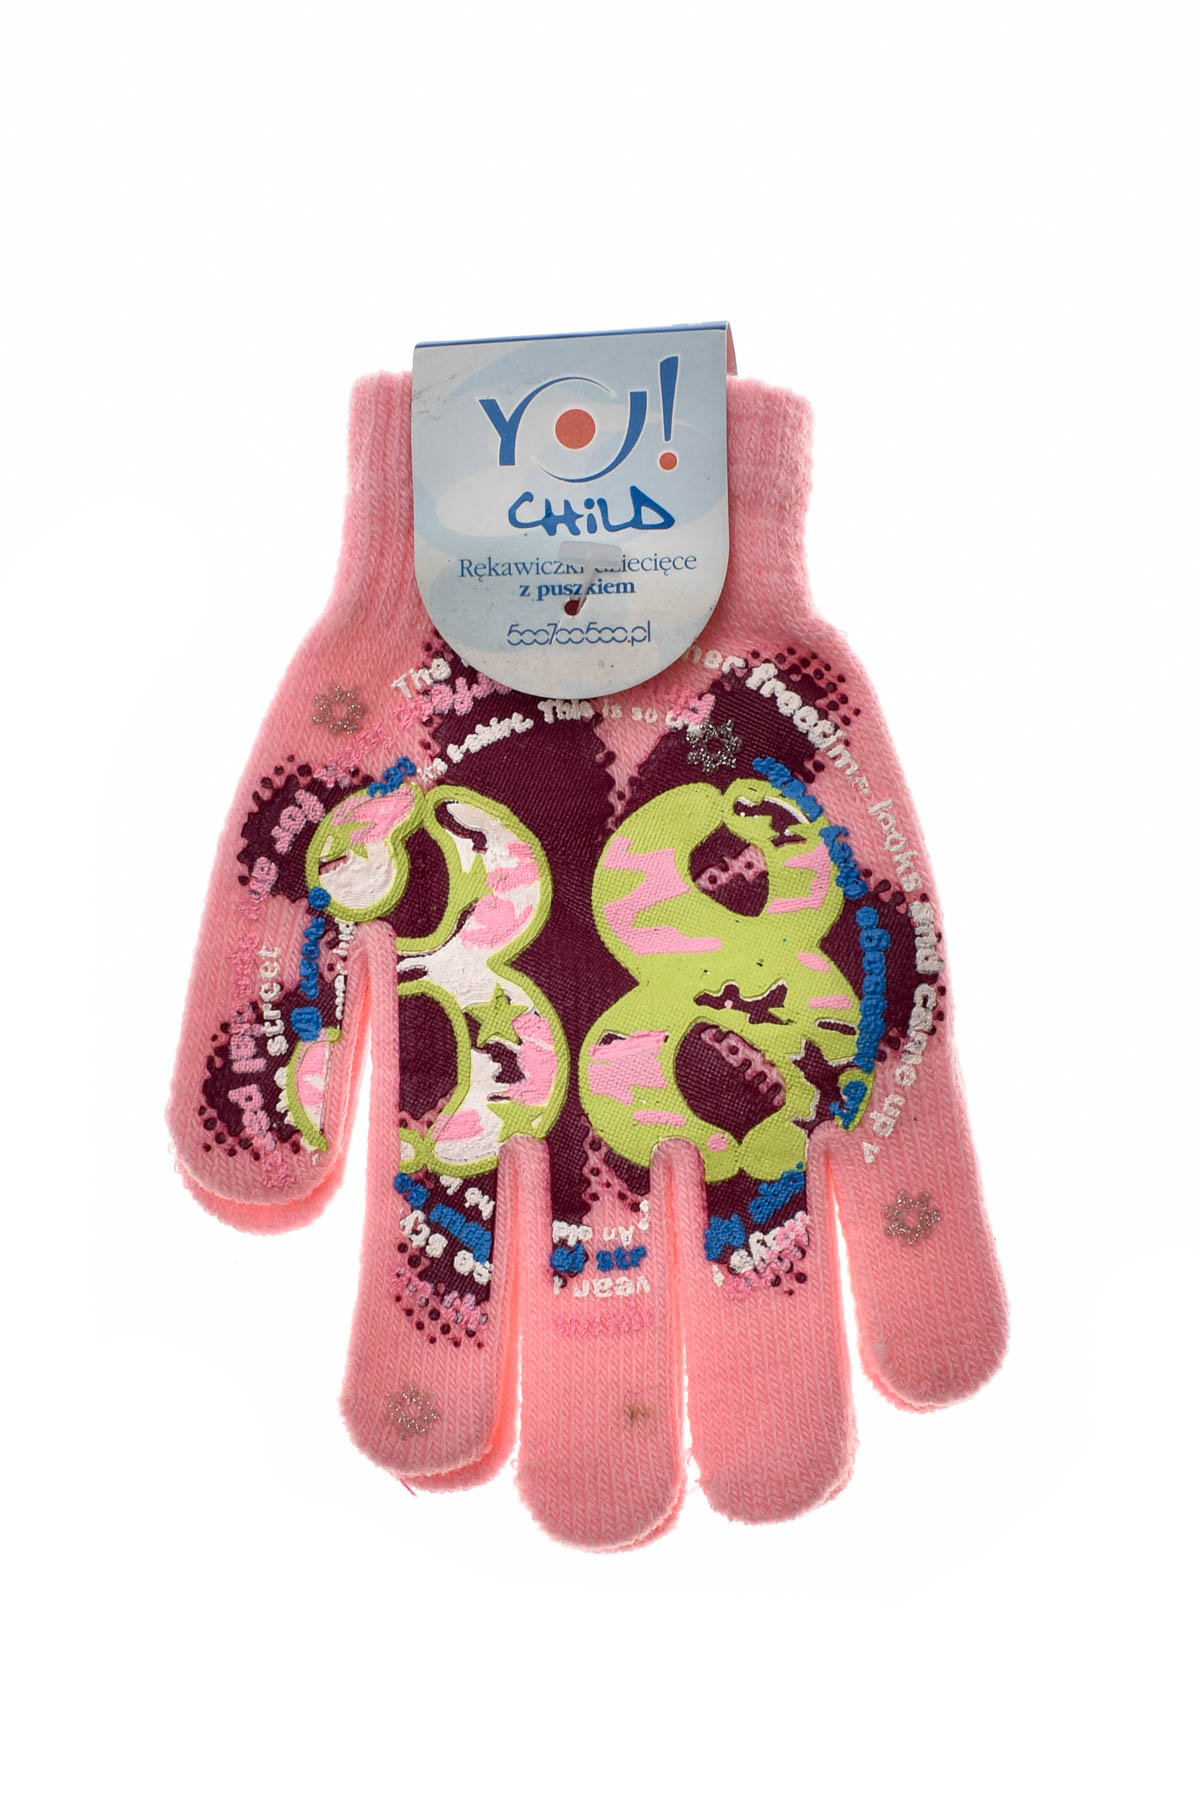 Rękawiczki dziecięce - Yo! club - 0